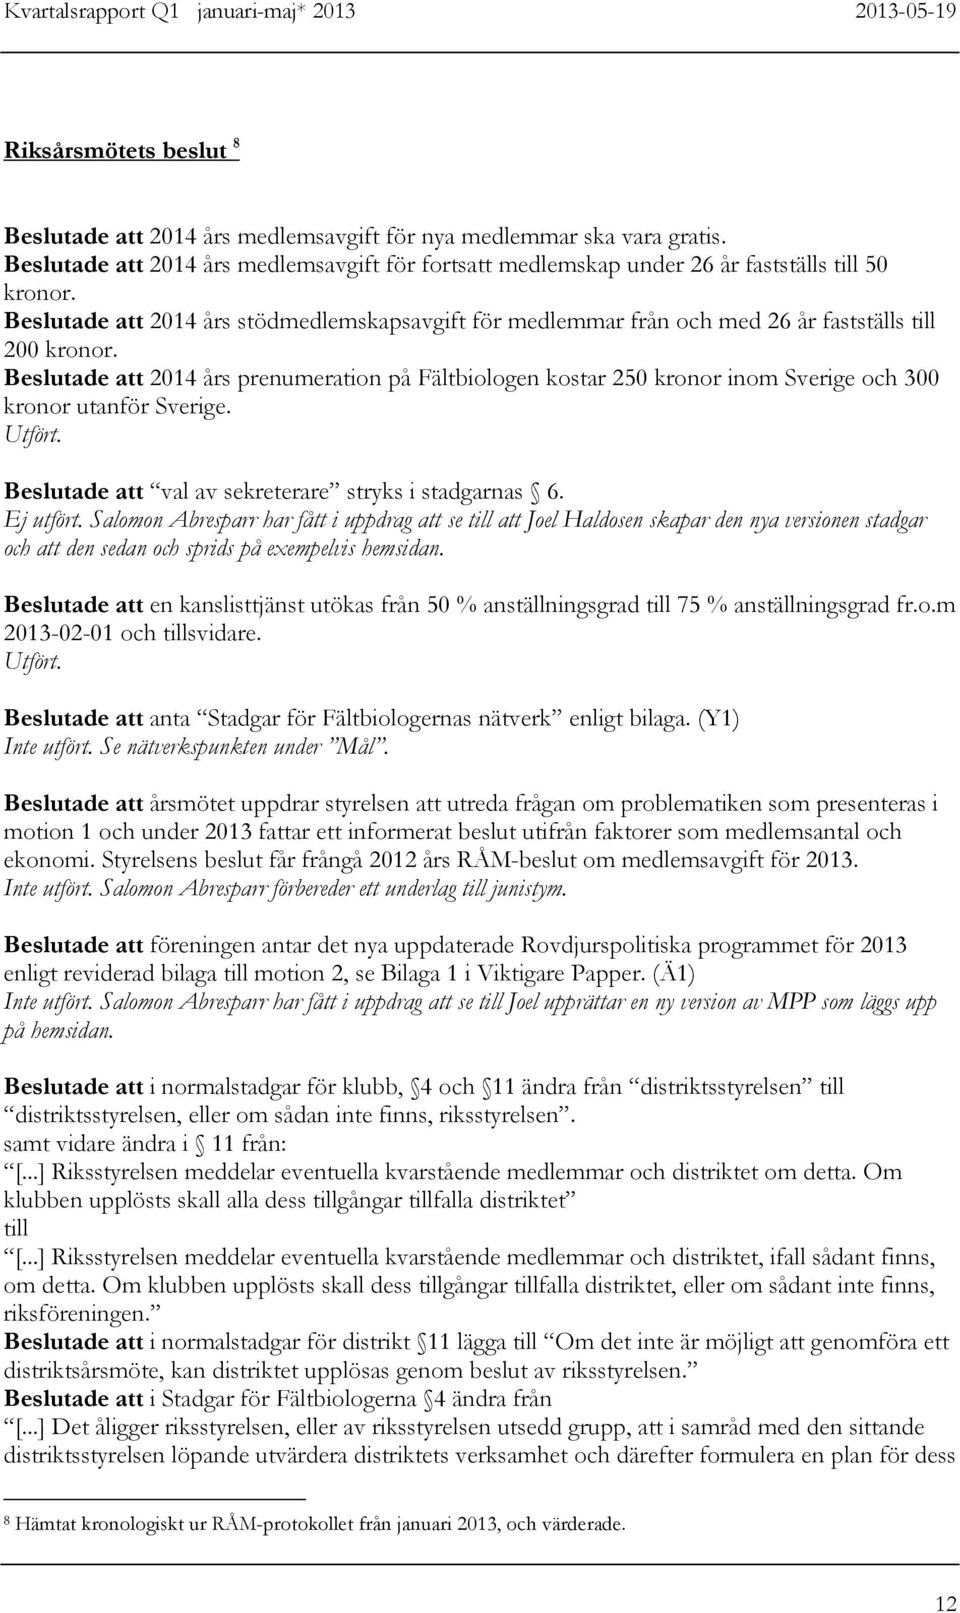 Beslutade 2014 års prenumeration på Fältbiologen kostar 250 kronor inom Sverige och 300 kronor utanför Sverige. Utfört. Beslutade val av sekreterare stryks i stadgarnas 6. Ej utfört.